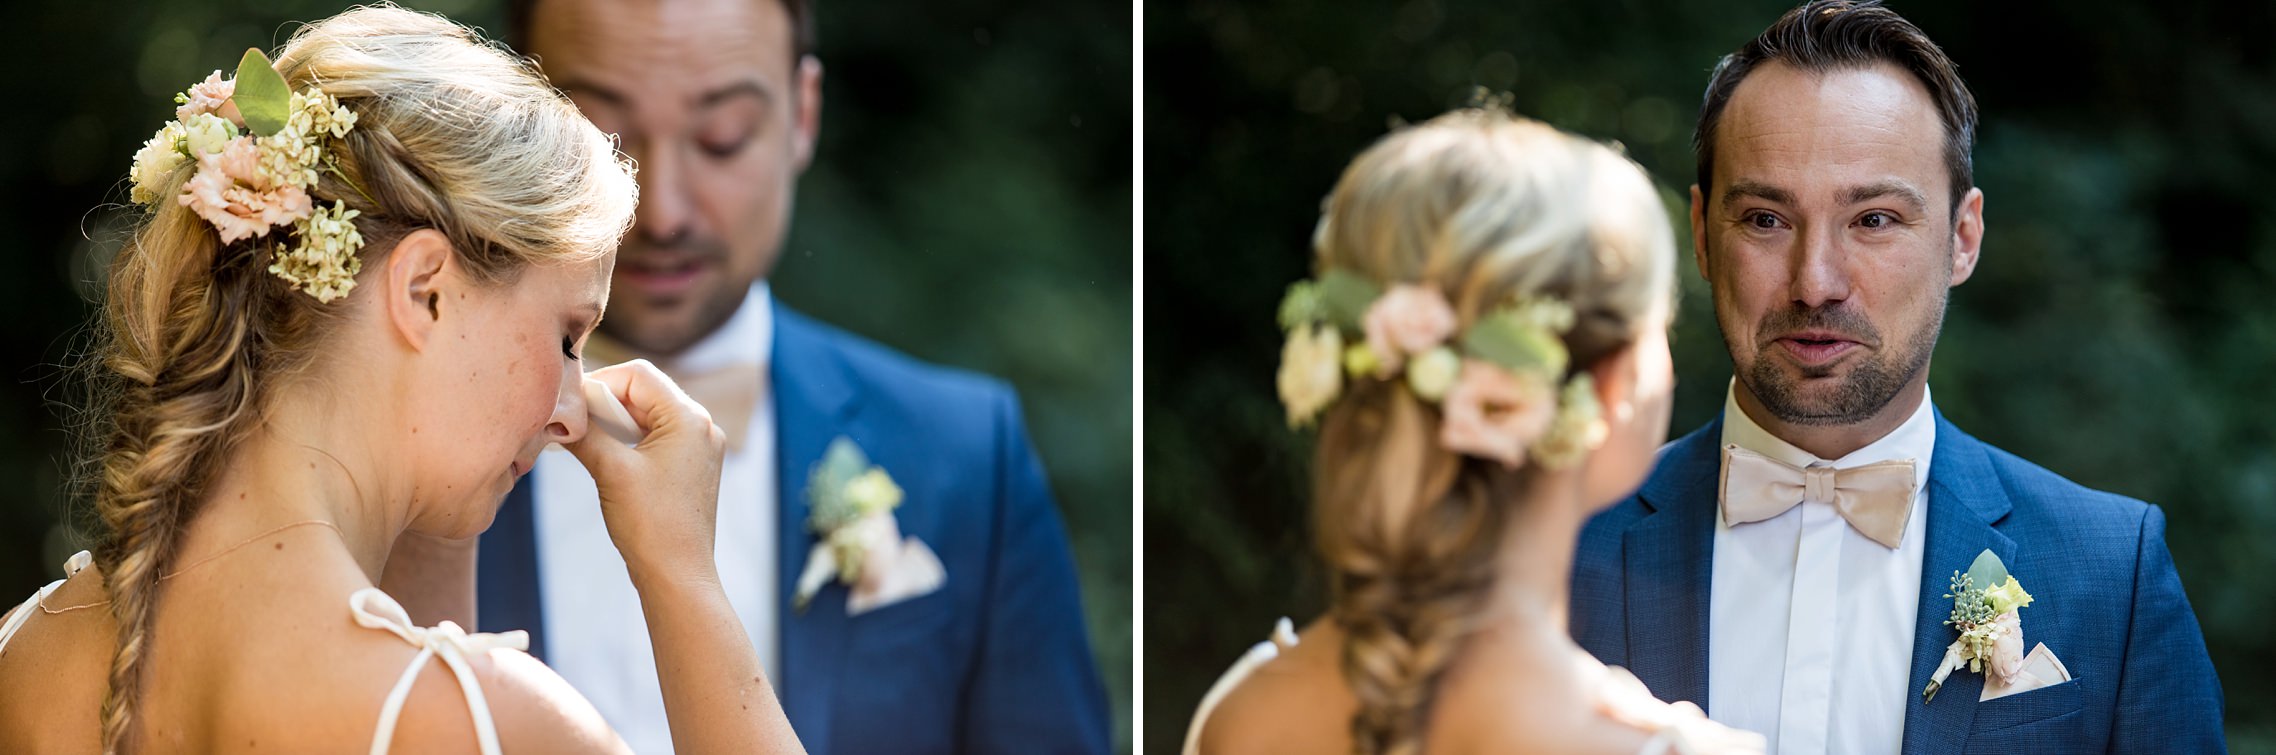 Braut vergießt Tränen bei der Trauzeremonie - Hochzeit im Englischen Garten in München